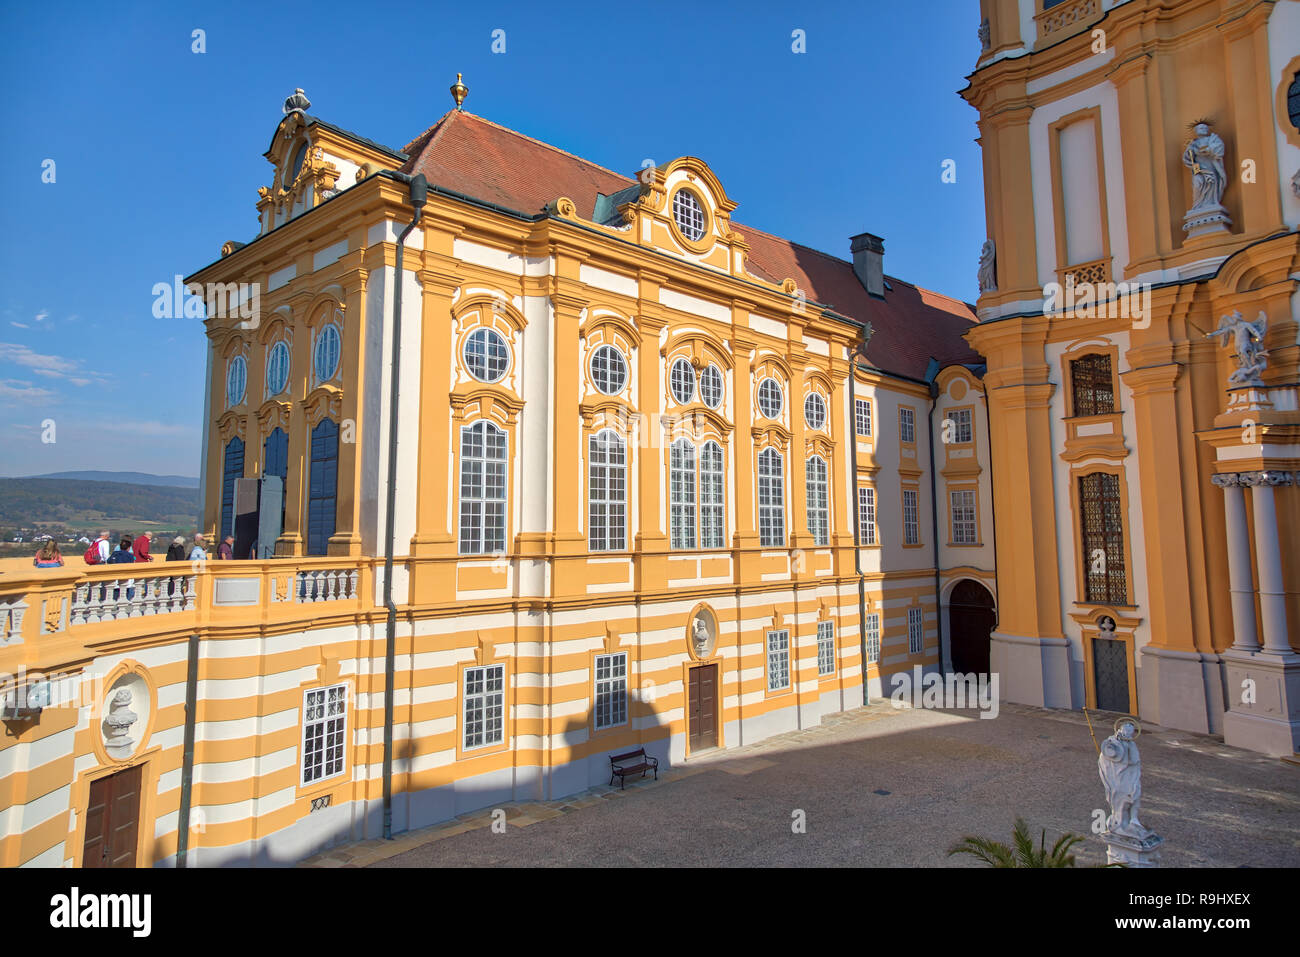 La abadía de Melk, Austria Foto de stock